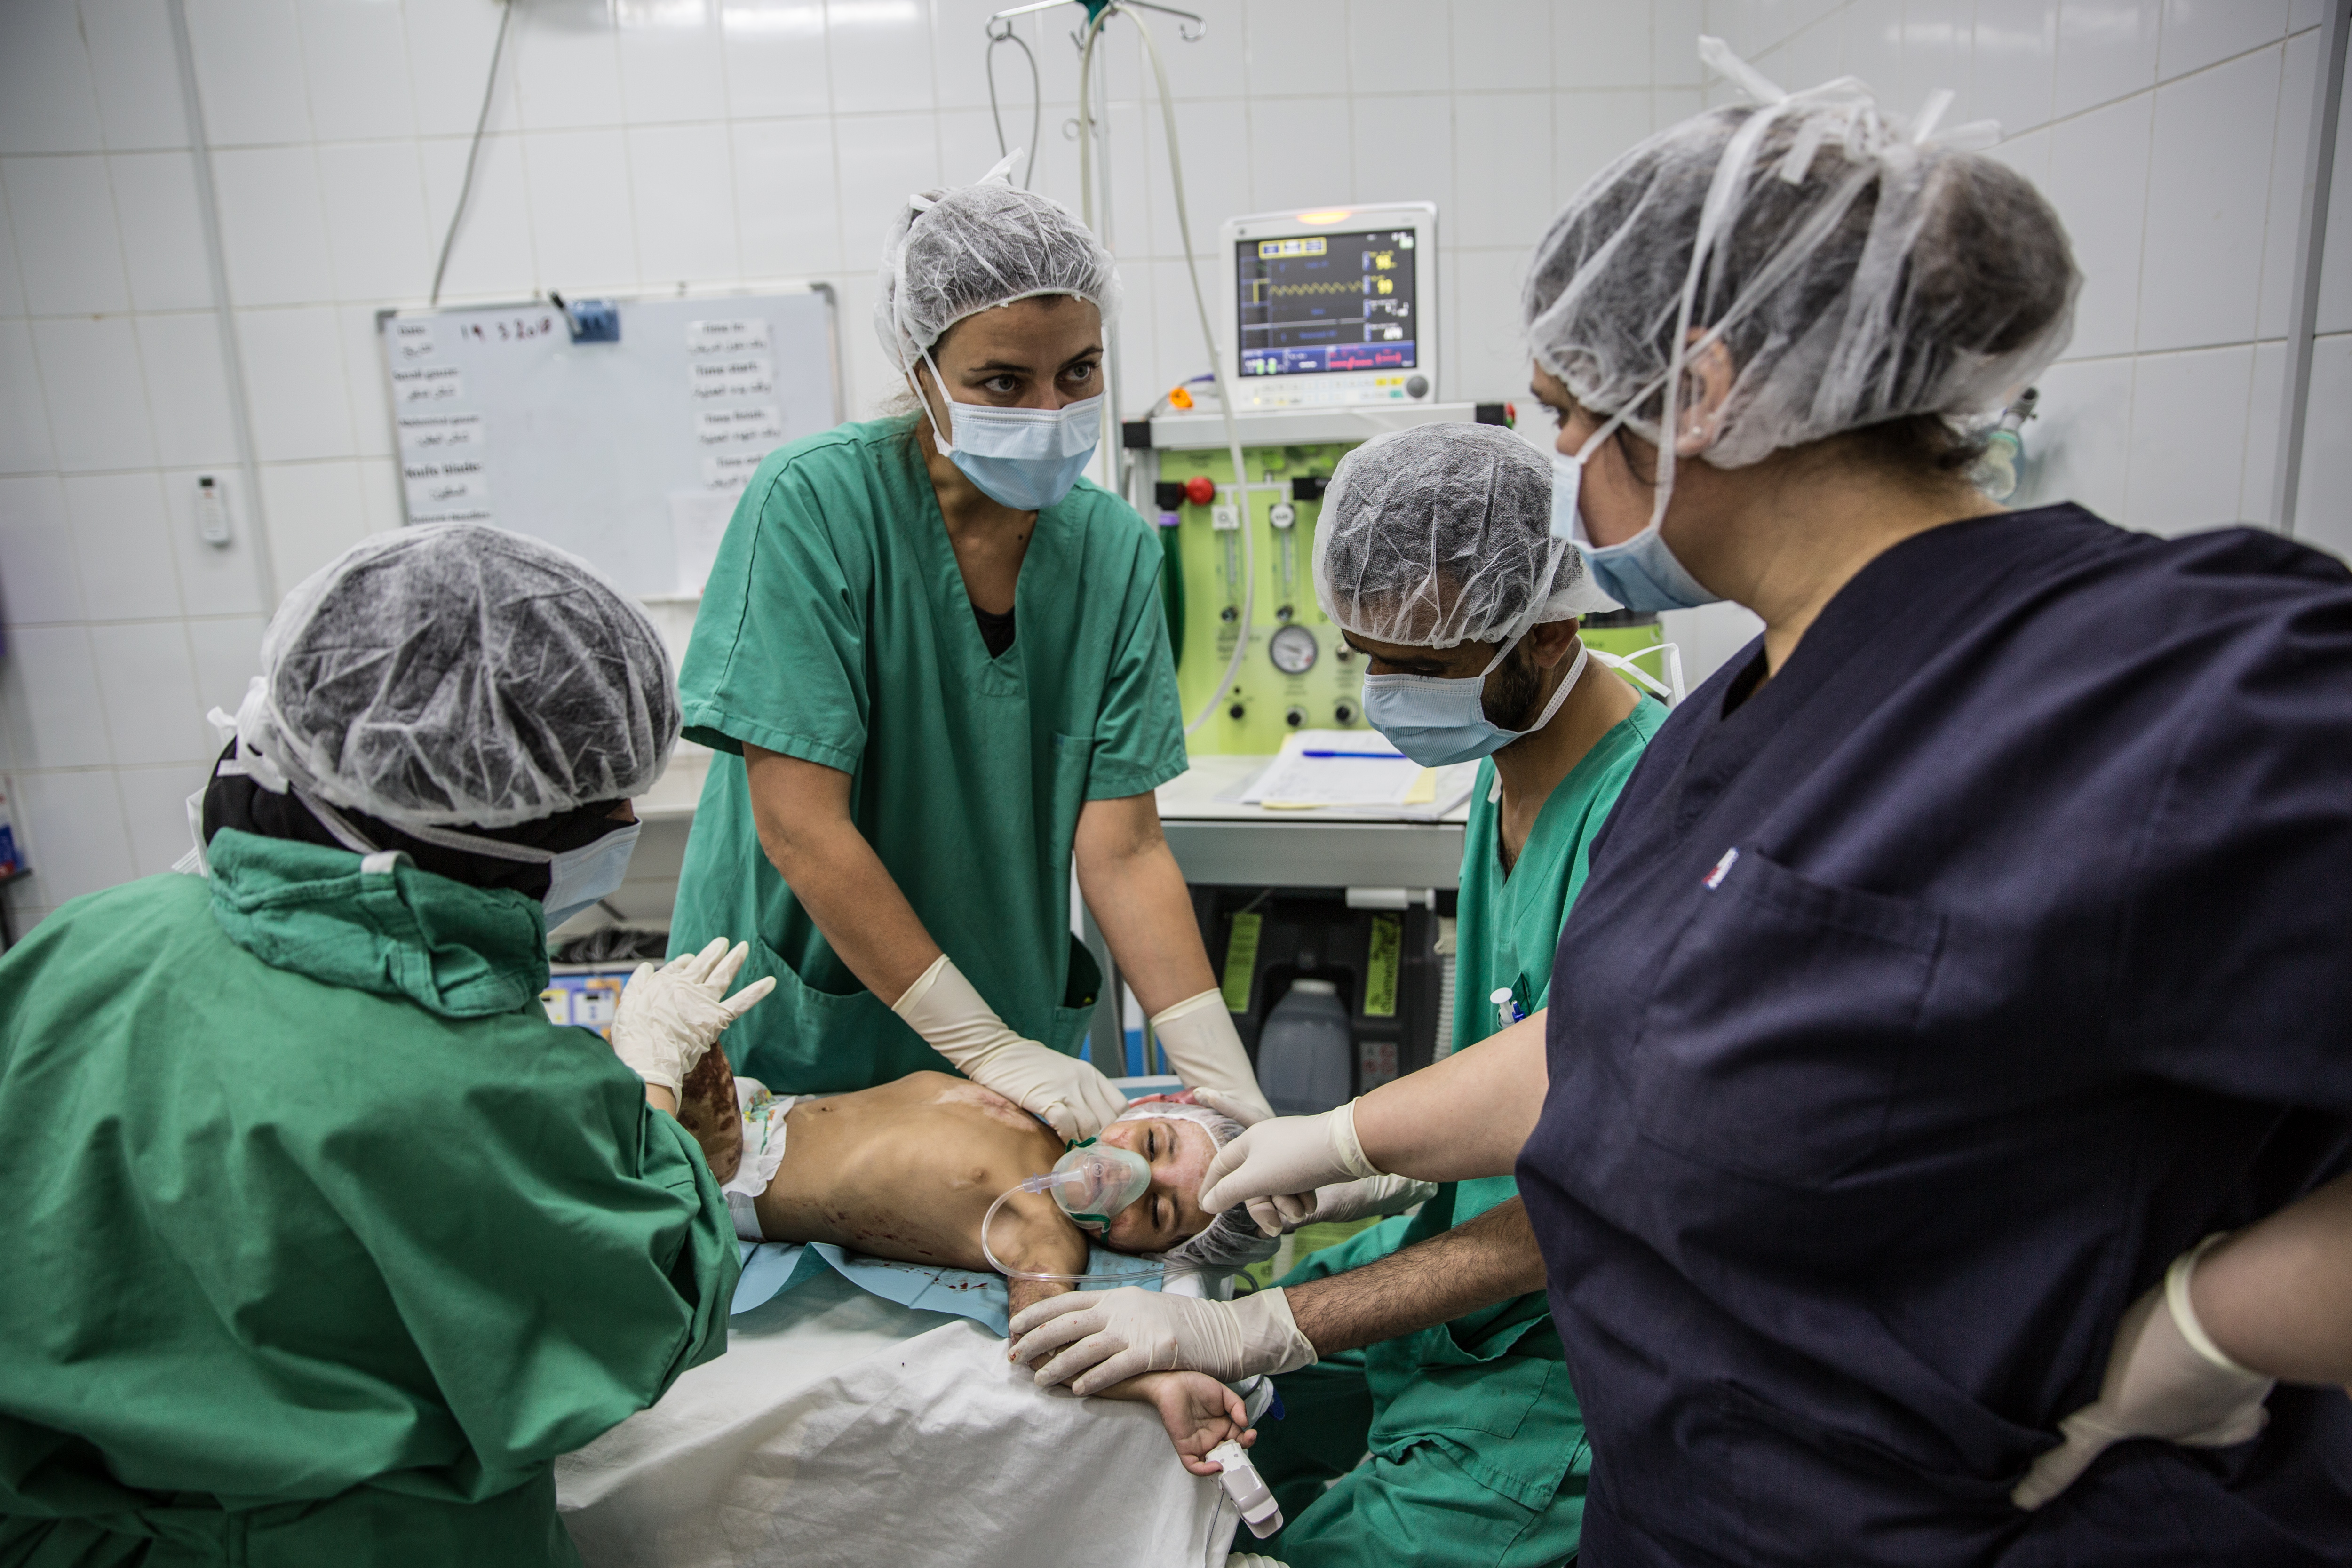 Elizabeth Braga, kinésithérapeute chez MSF, fait une intervention sur une enfant brulée pour l'aider à récupérer de la mobilité au niveau de son bras droit. © Agnes Varraine-Leca, 20 mars 2018